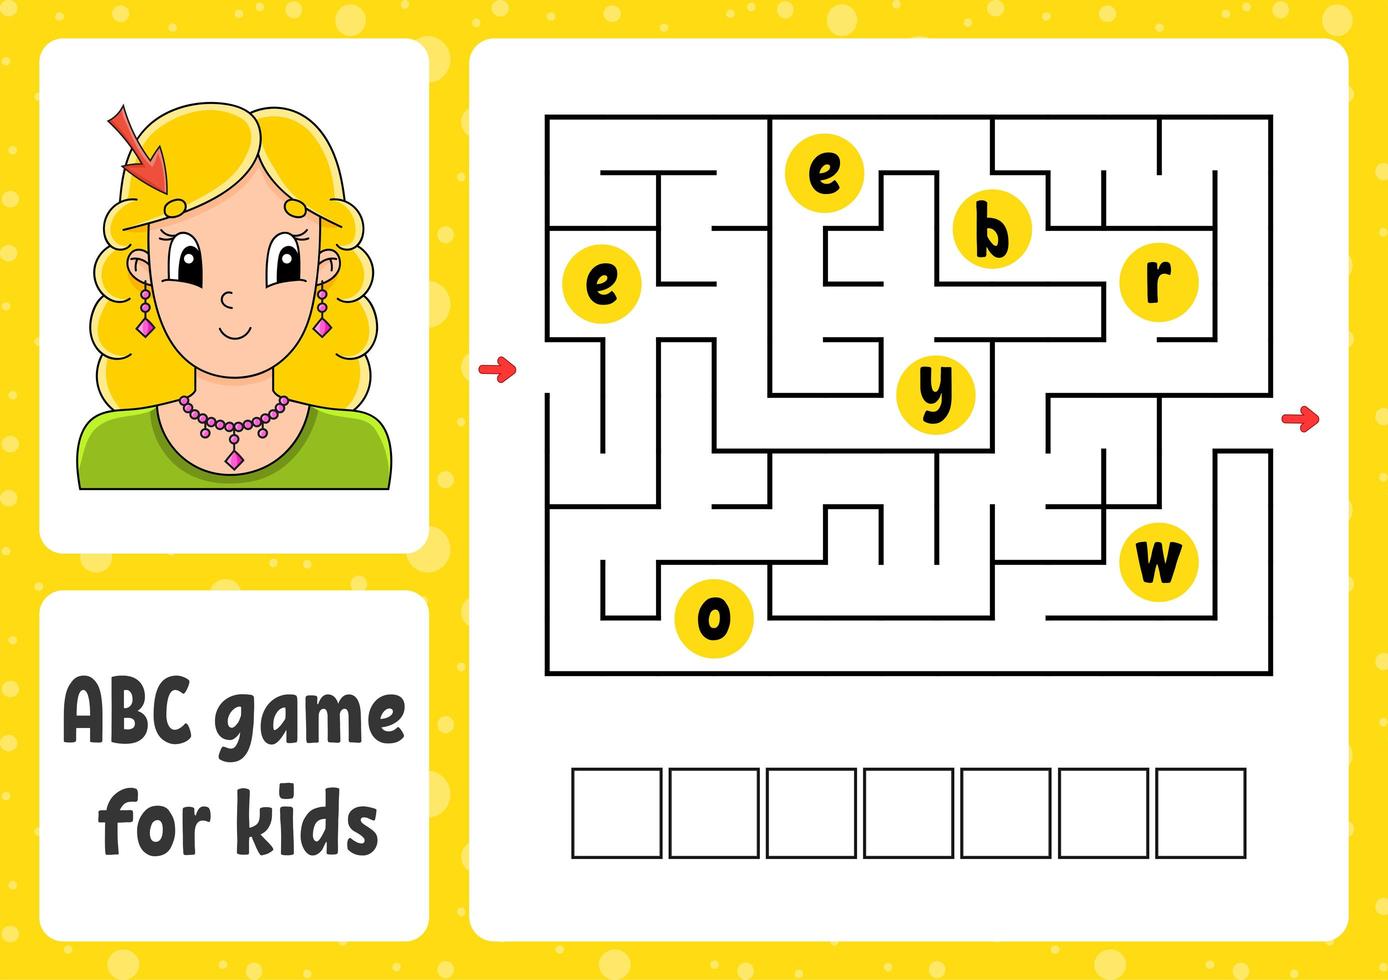 labirinto abc per bambini. risposta sopracciglio. labirinto rettangolare. scheda attività. puzzle per bambini. stile cartone animato. enigma logico. illustrazione vettoriale a colori.